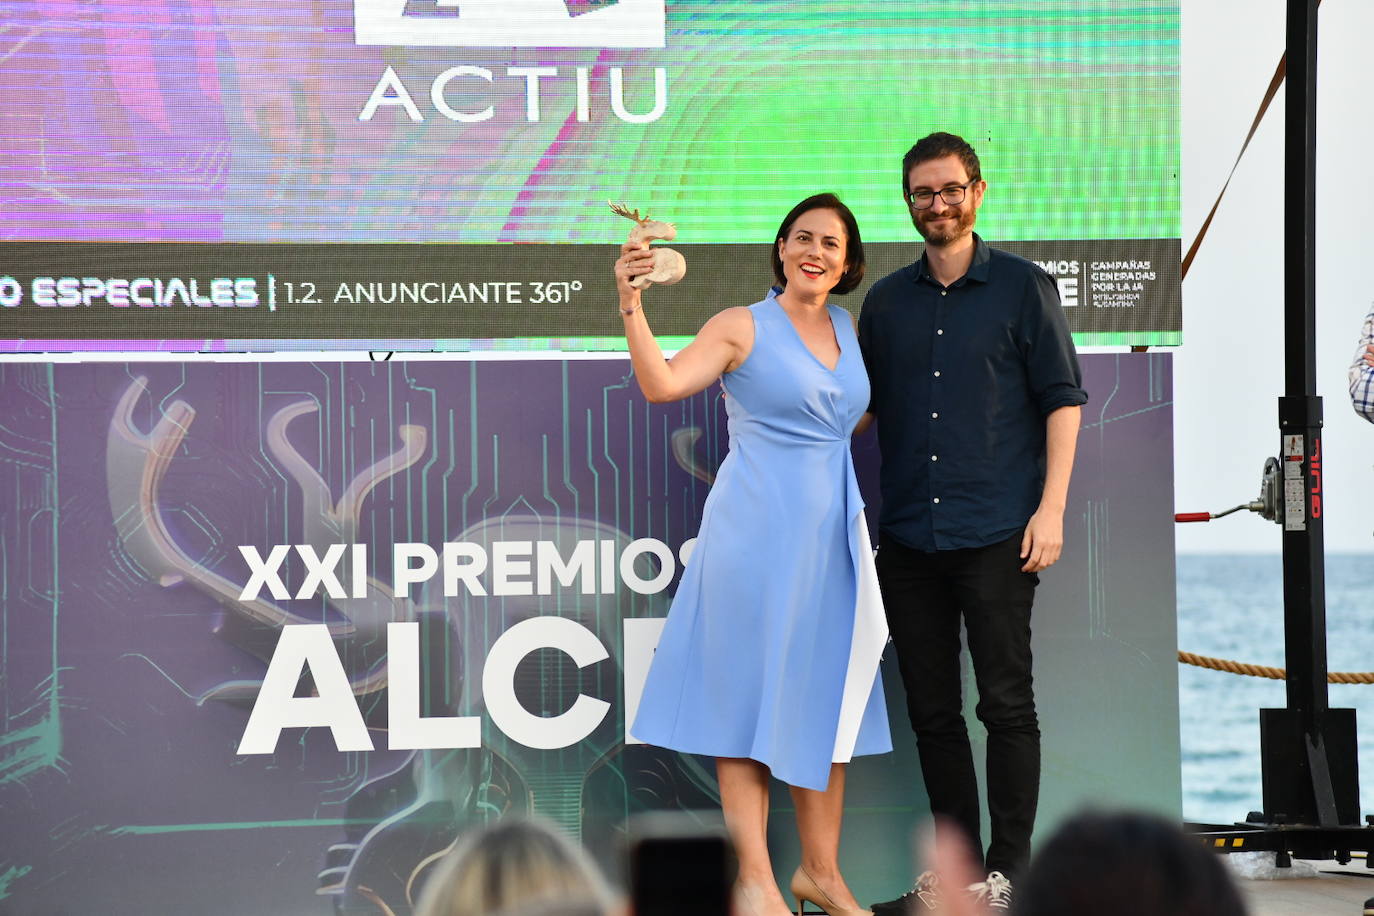 Así ha sido la entrega de la XXI edición de los Premios Alce en Alicante entregadas por la Asociación 361º